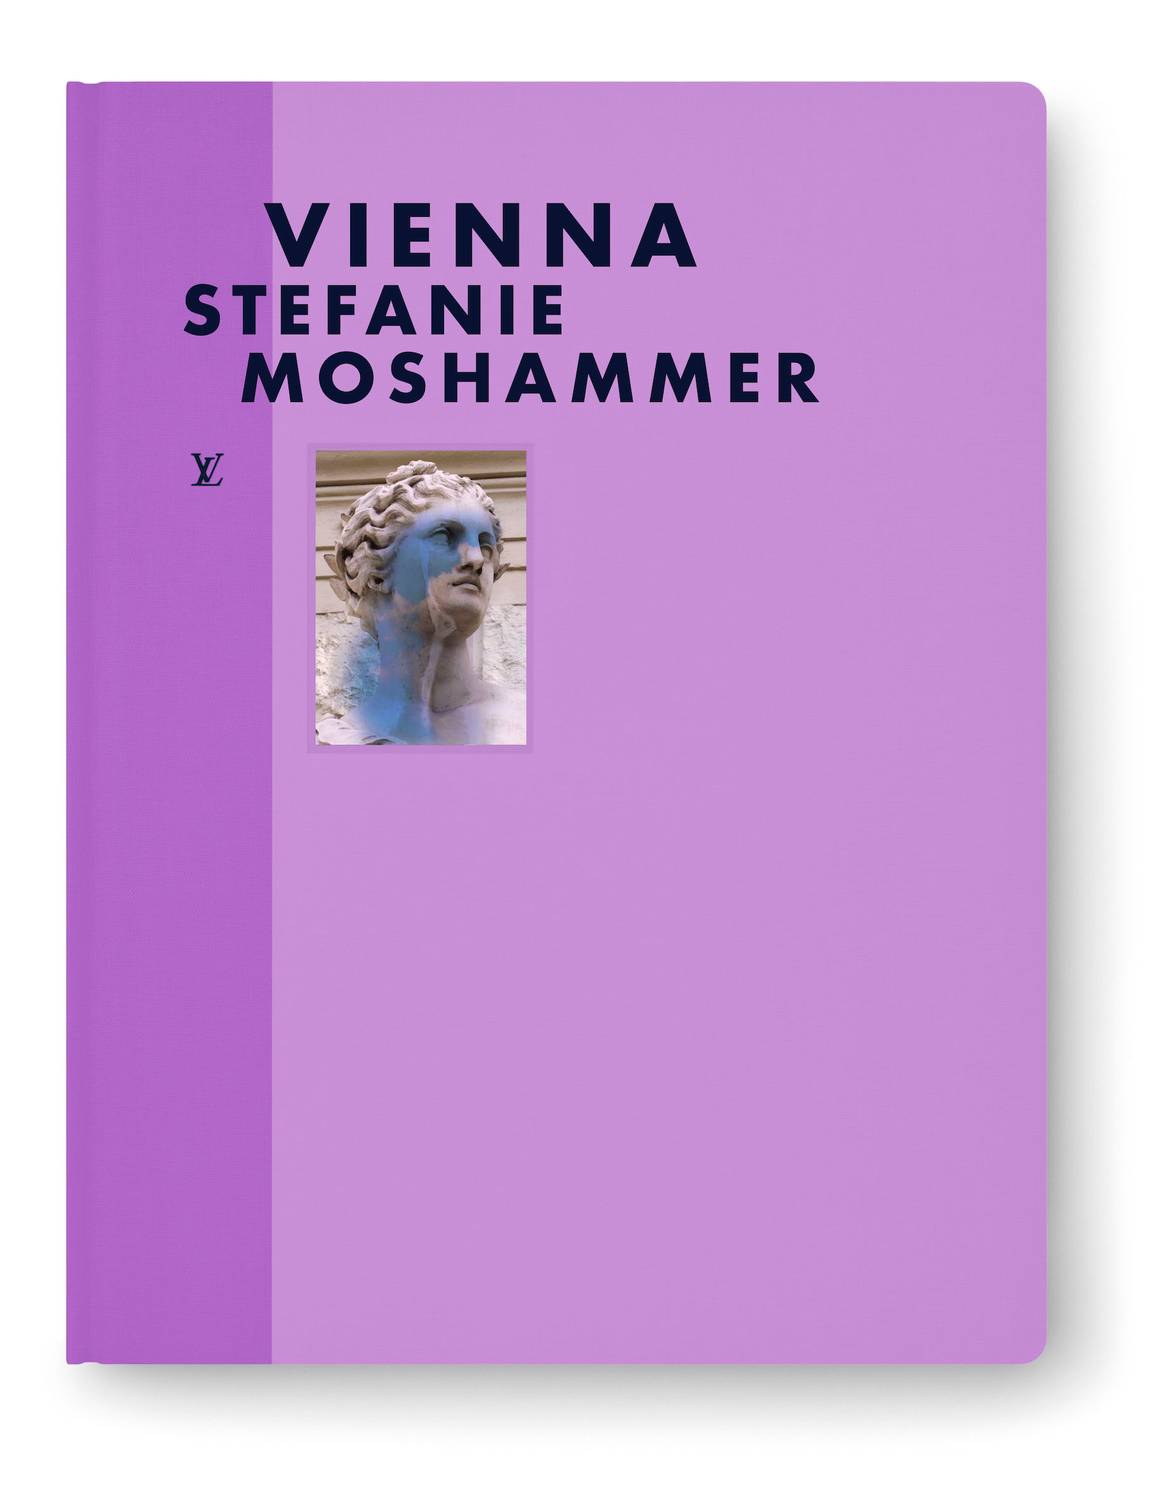 Der Bildband 'Fashion Eye: Vienna' mit Aufnahmen der Wiener Künstlerin Stefanie Moshammer.